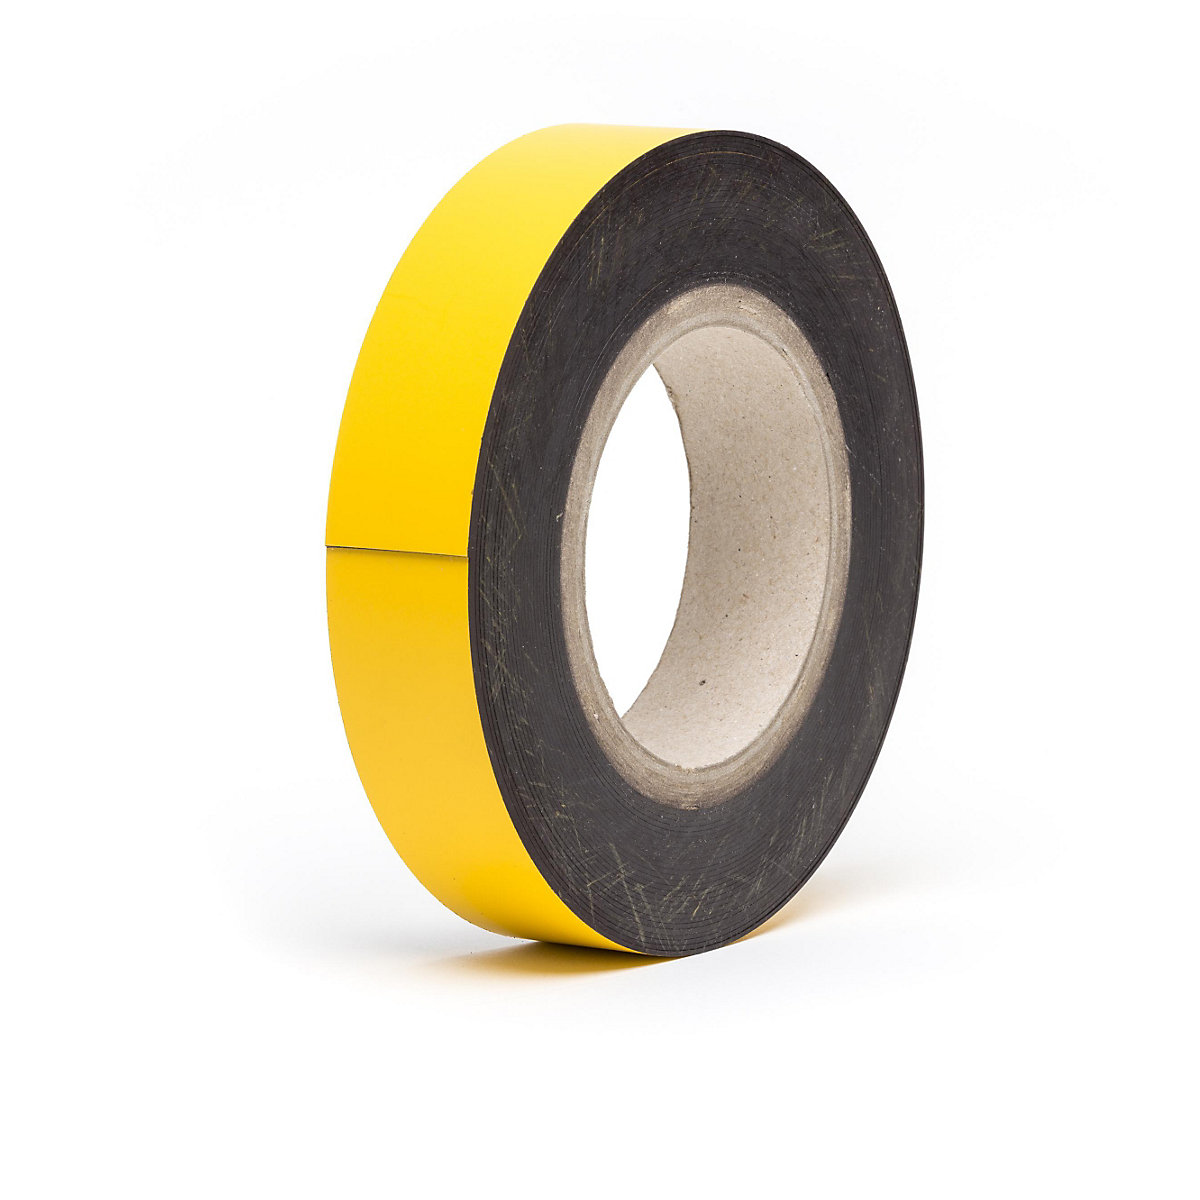 Etiquette magnétique en rouleaux, jaune, hauteur 25 mm, longueur rouleau 10 m